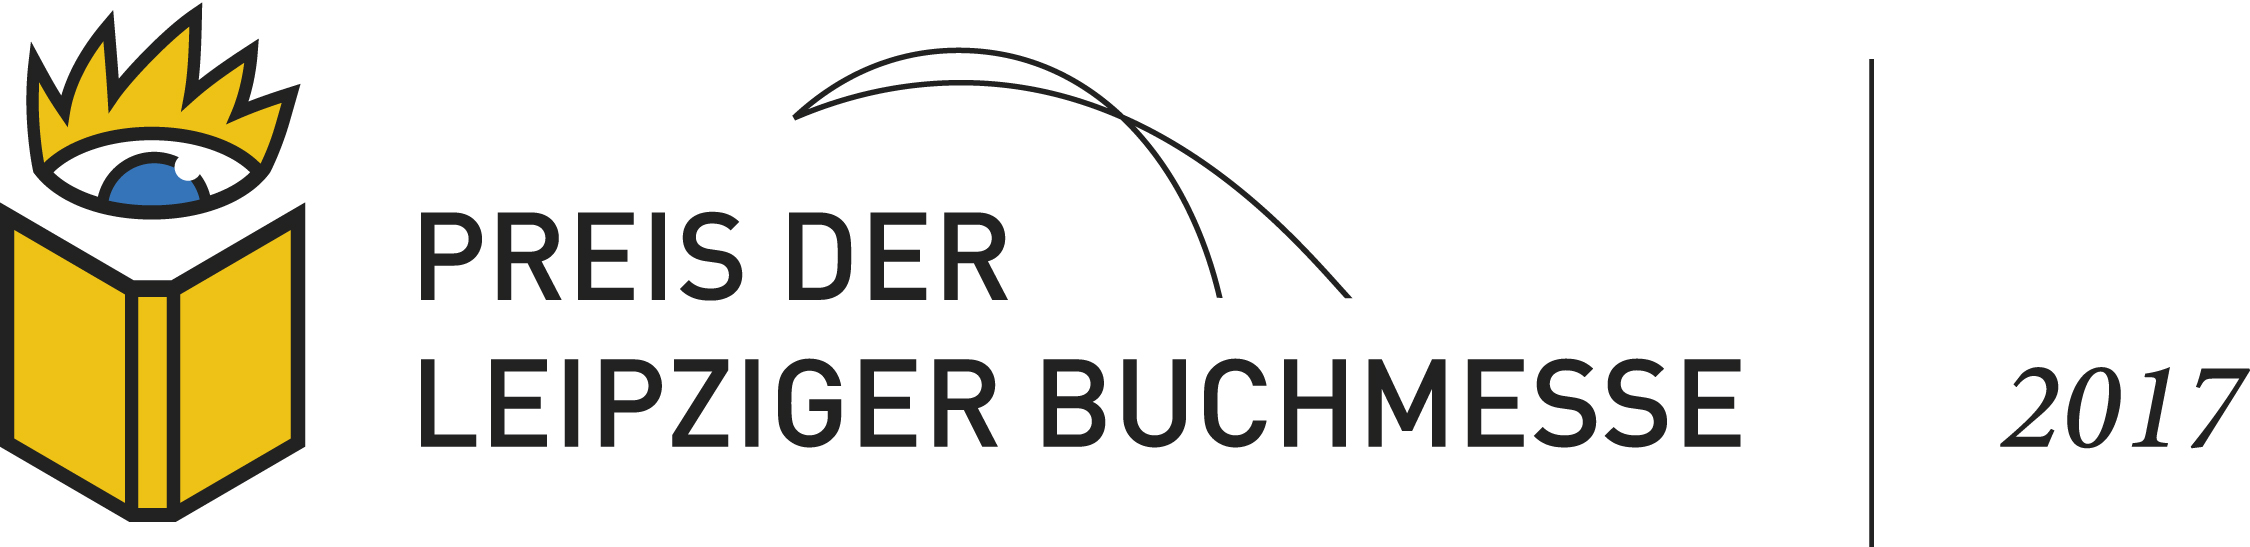 Logo Preis der Leipziger Buchmesse